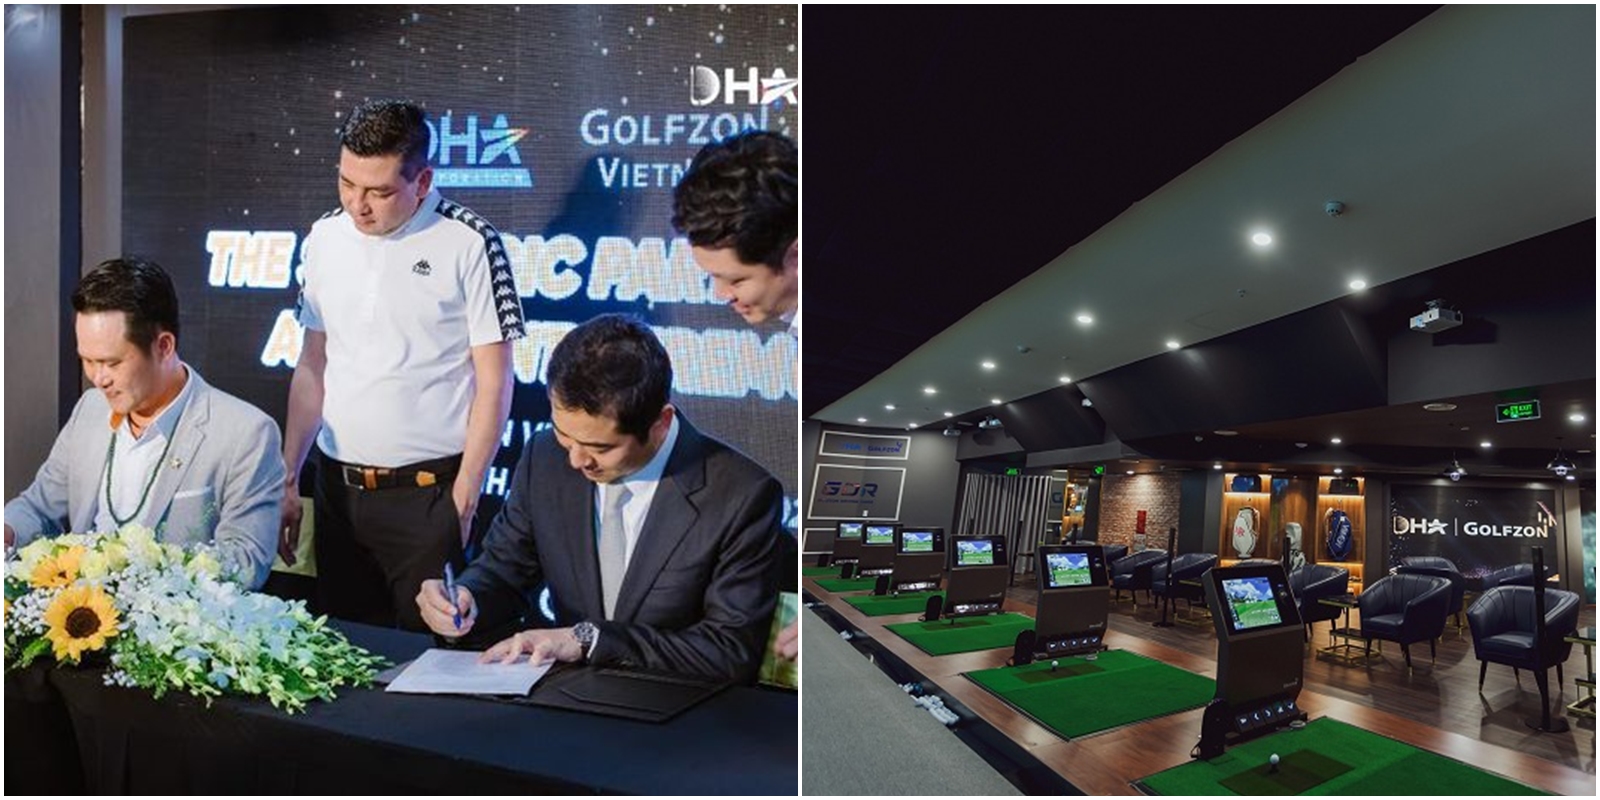 Ở Việt Nam, 3/2021 công ty DHA của golfer Đặng Hồng Anh đã ký với Golfzon ra mắt tổ hợp DHA – Golfzon trong nhà hiện đại tại Diamond Plaza, Q1, TP HCM